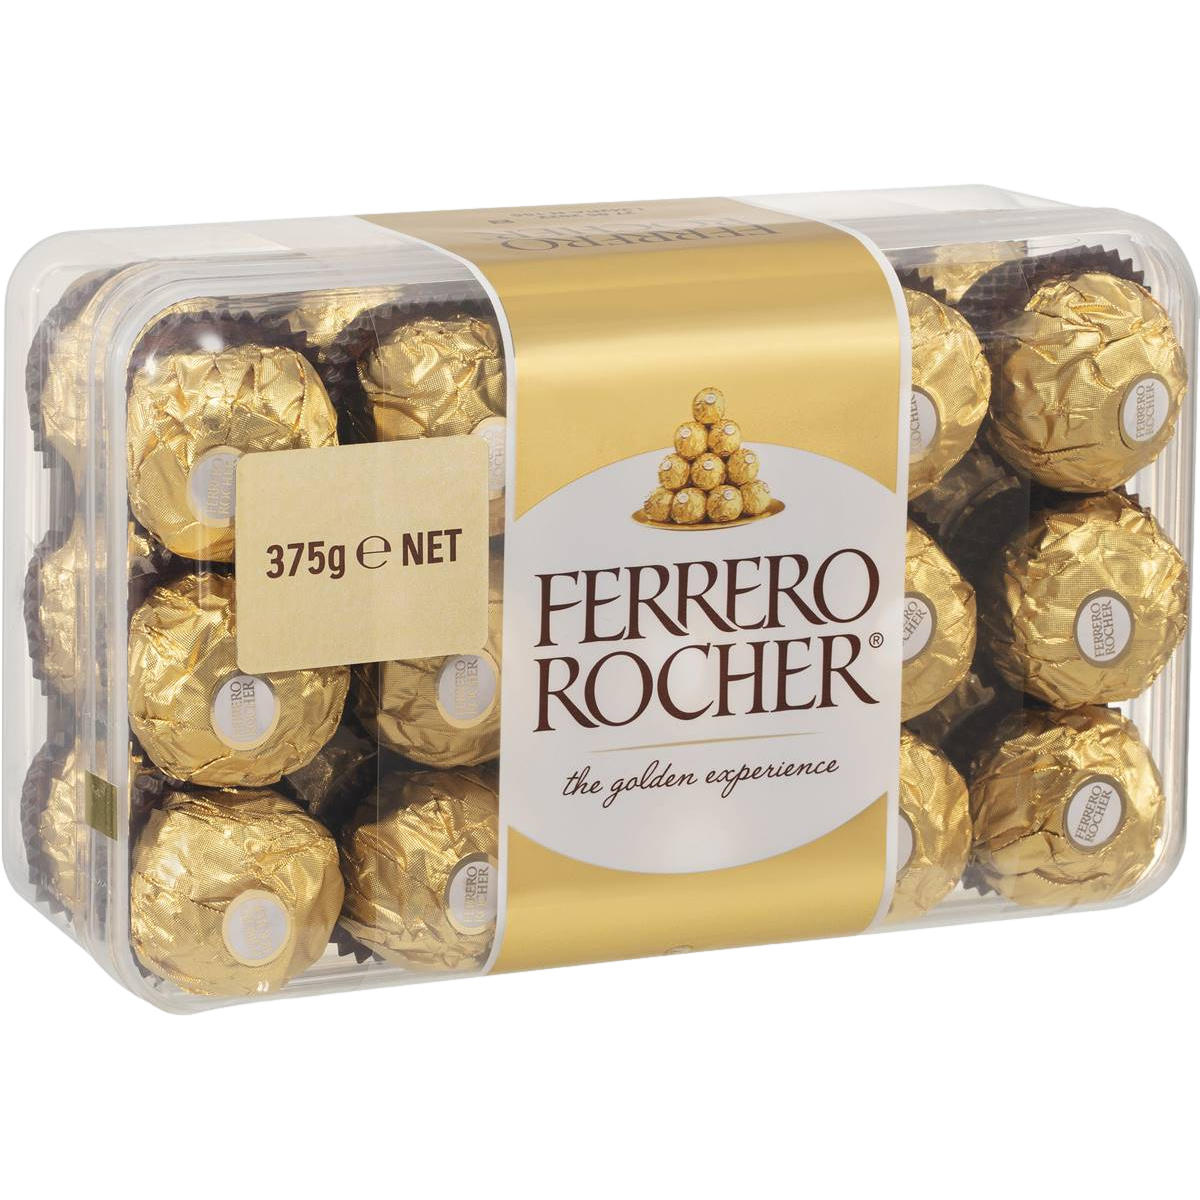 Ferrero Rocher Chocolate Gift Box 375g 30 Pack